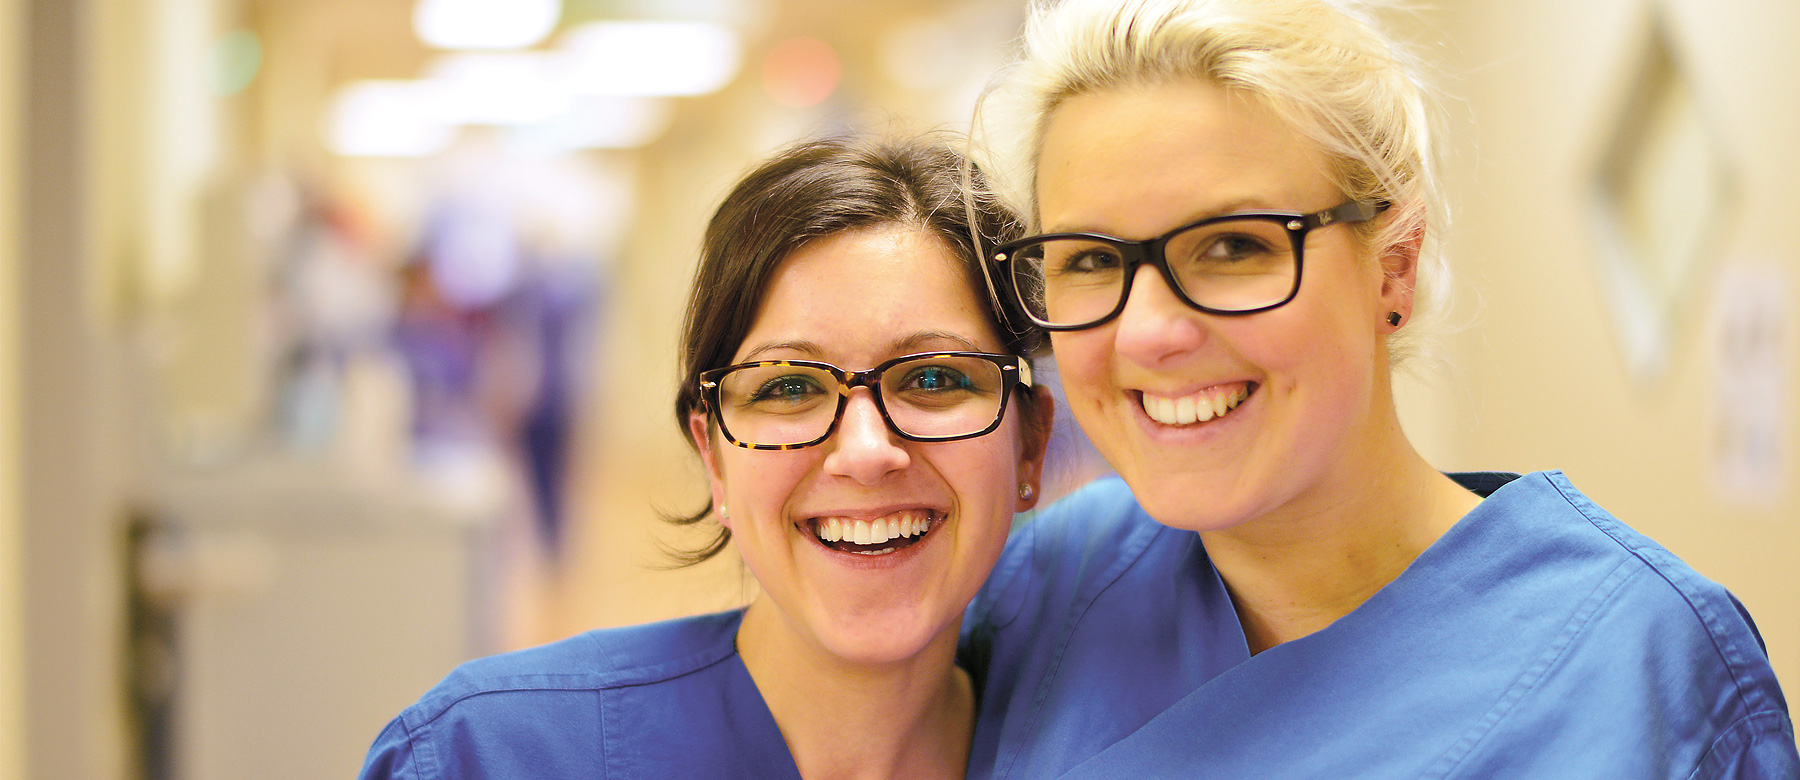 Zwei Intensivkrankenschwestern umarmen sich und lachen in die Kamera.